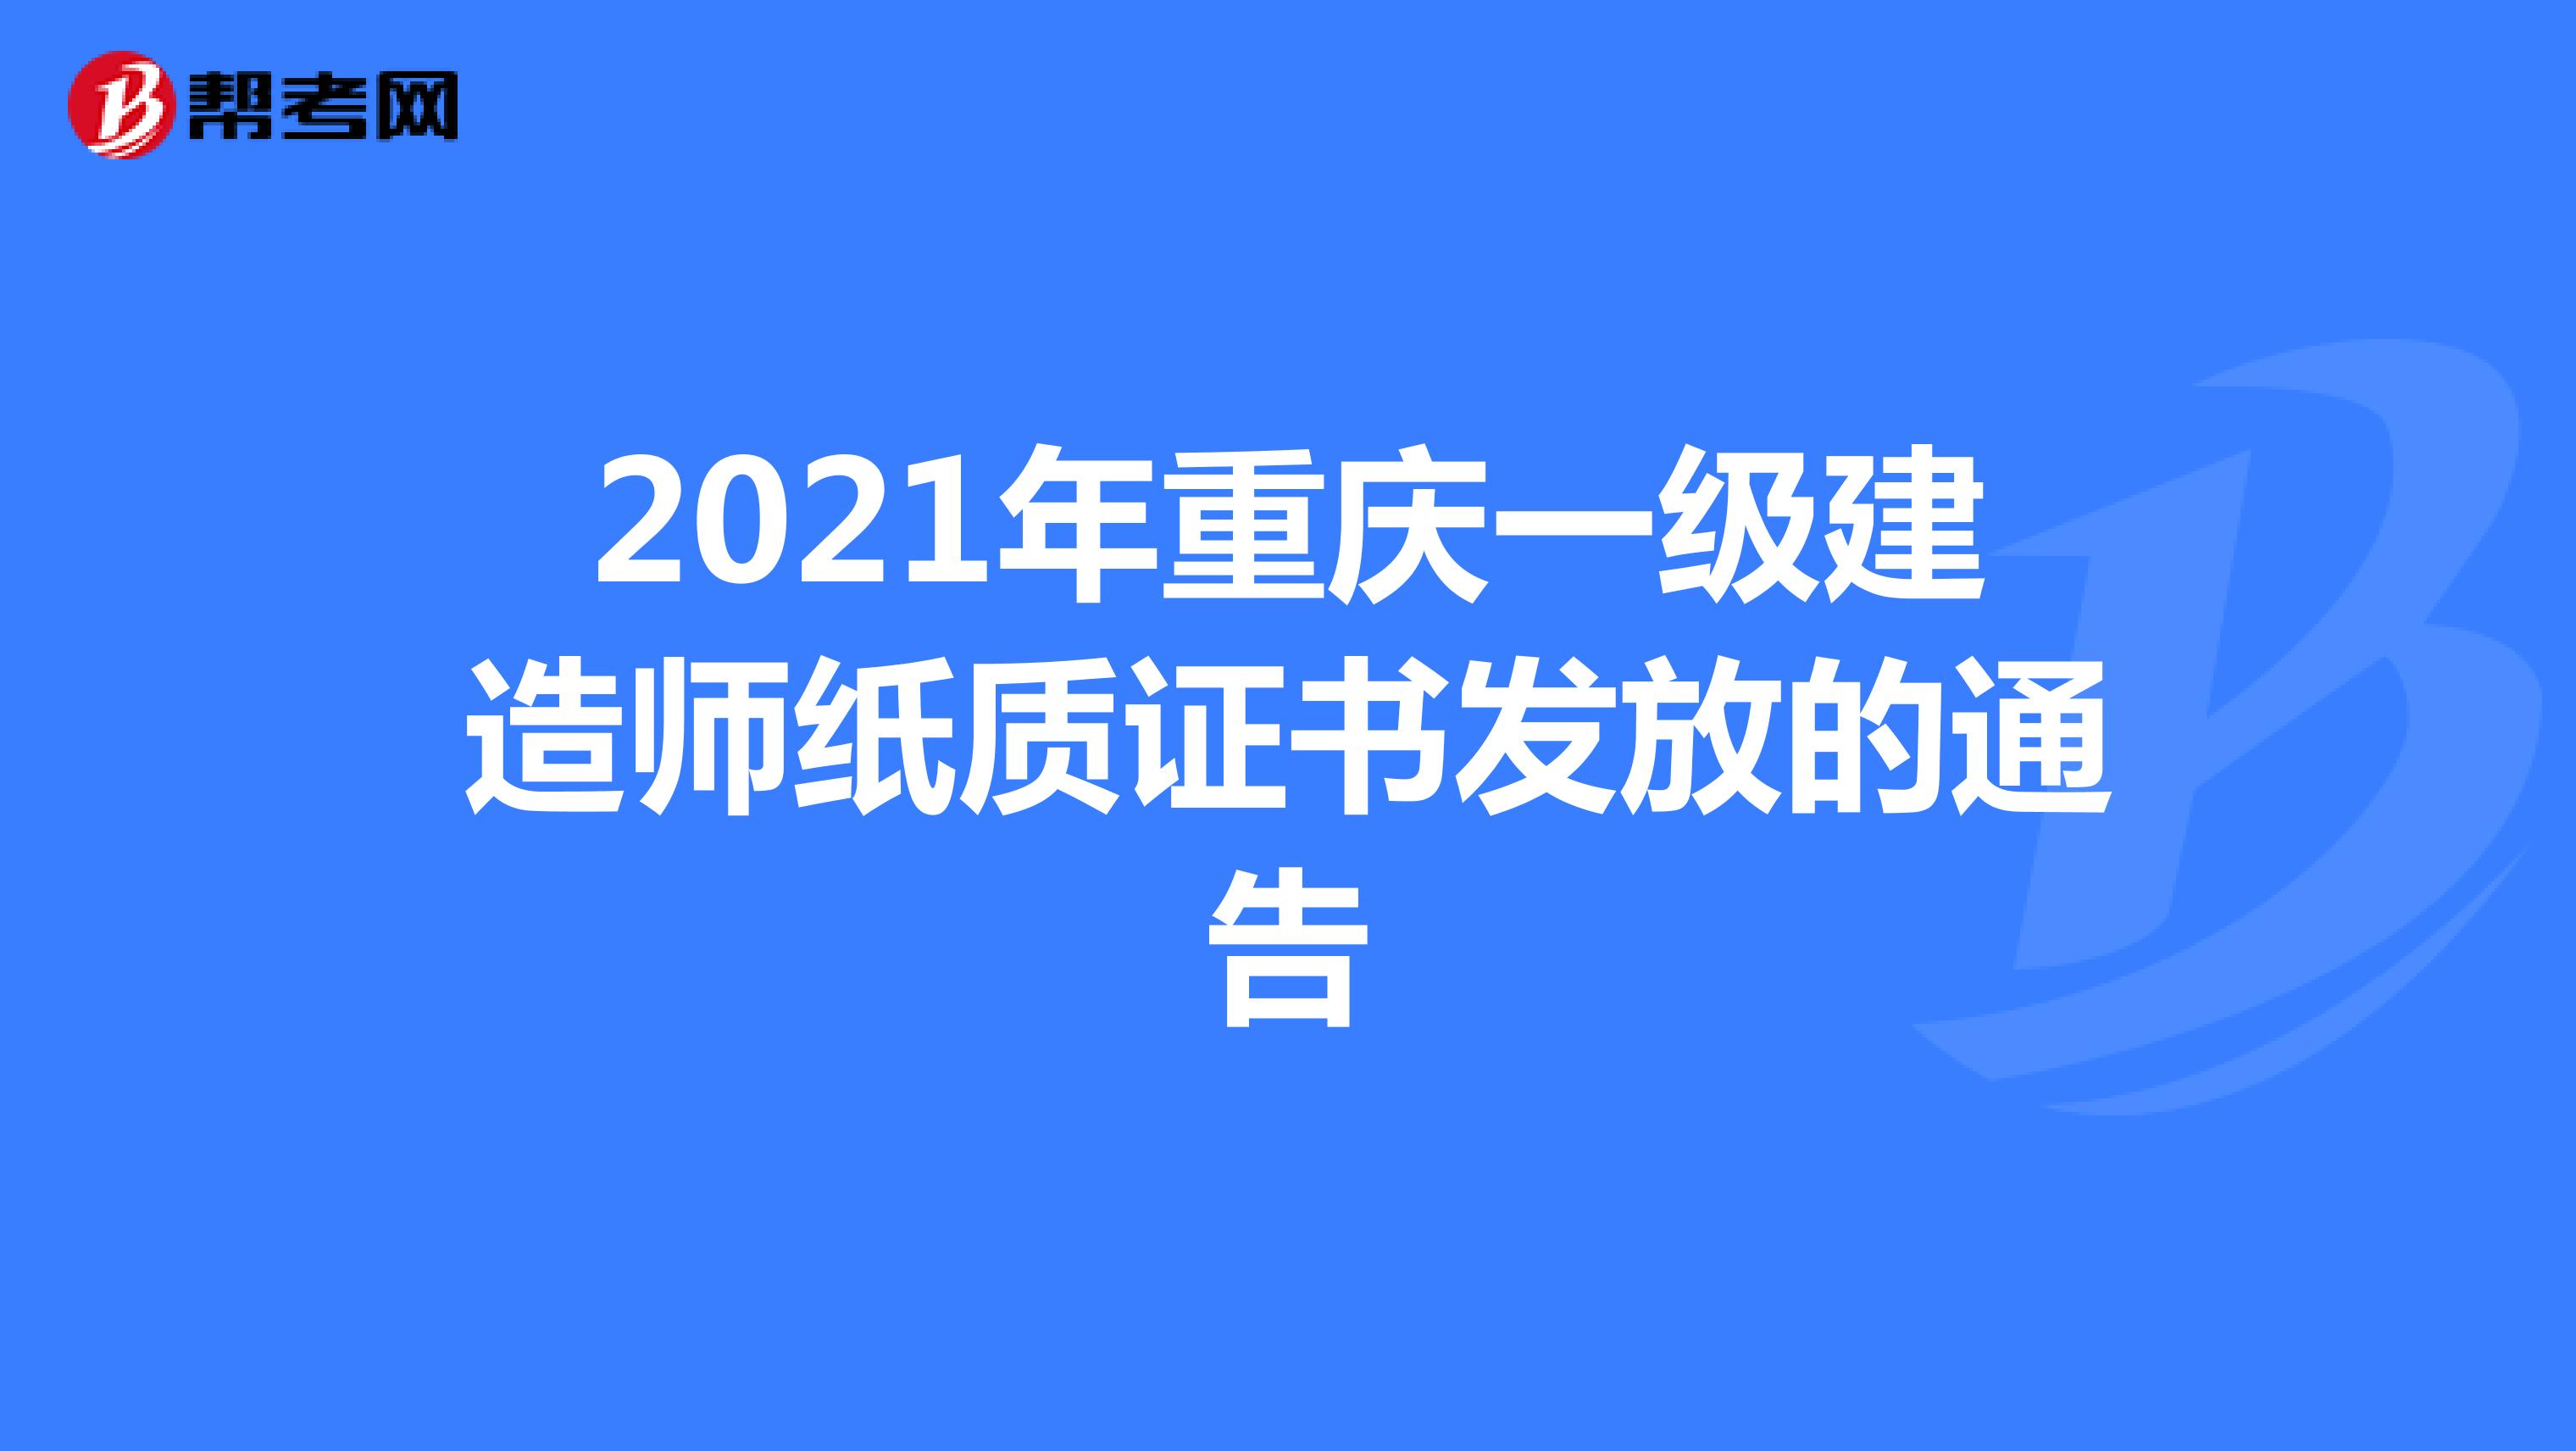 2021年重庆一级建造师纸质证书发放的通告